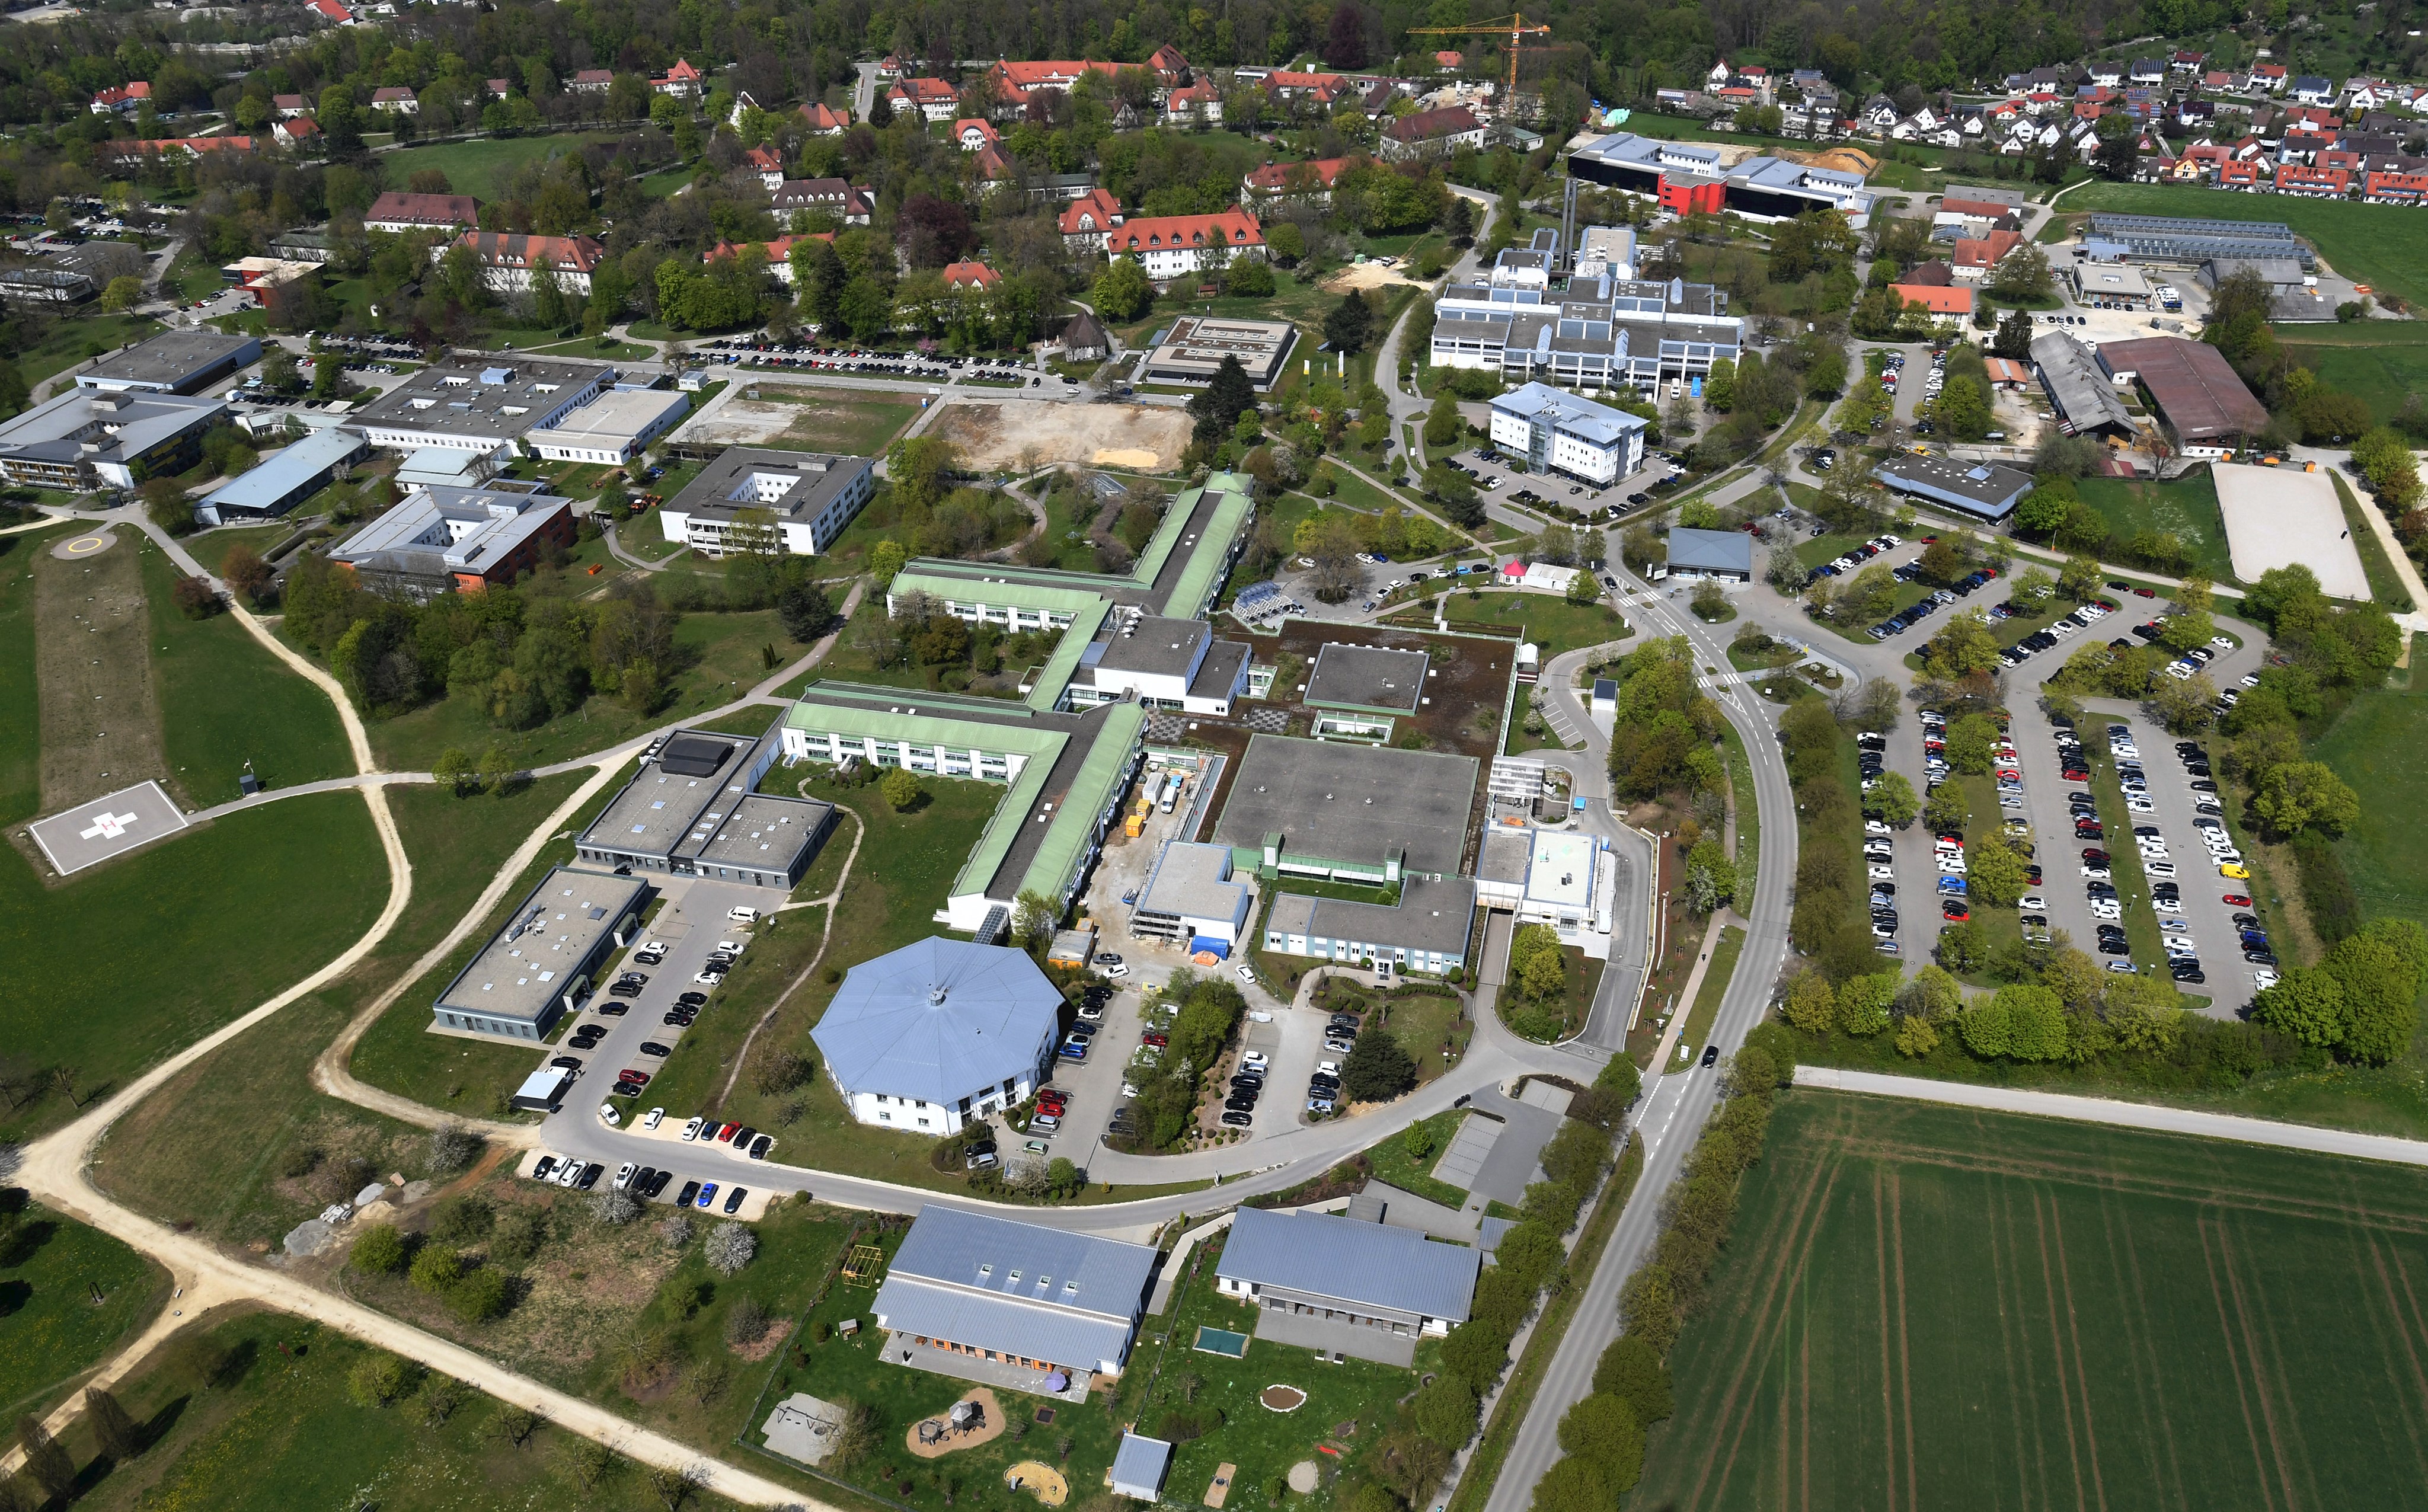 Schlaganfall-Versorgung: Klinik Mindelheim in Neurovaskuläres Versorgungsnetzwerk (NEVAS) integriert – enge regionale Zusammenarbeit mit der Neurologie Günzburg